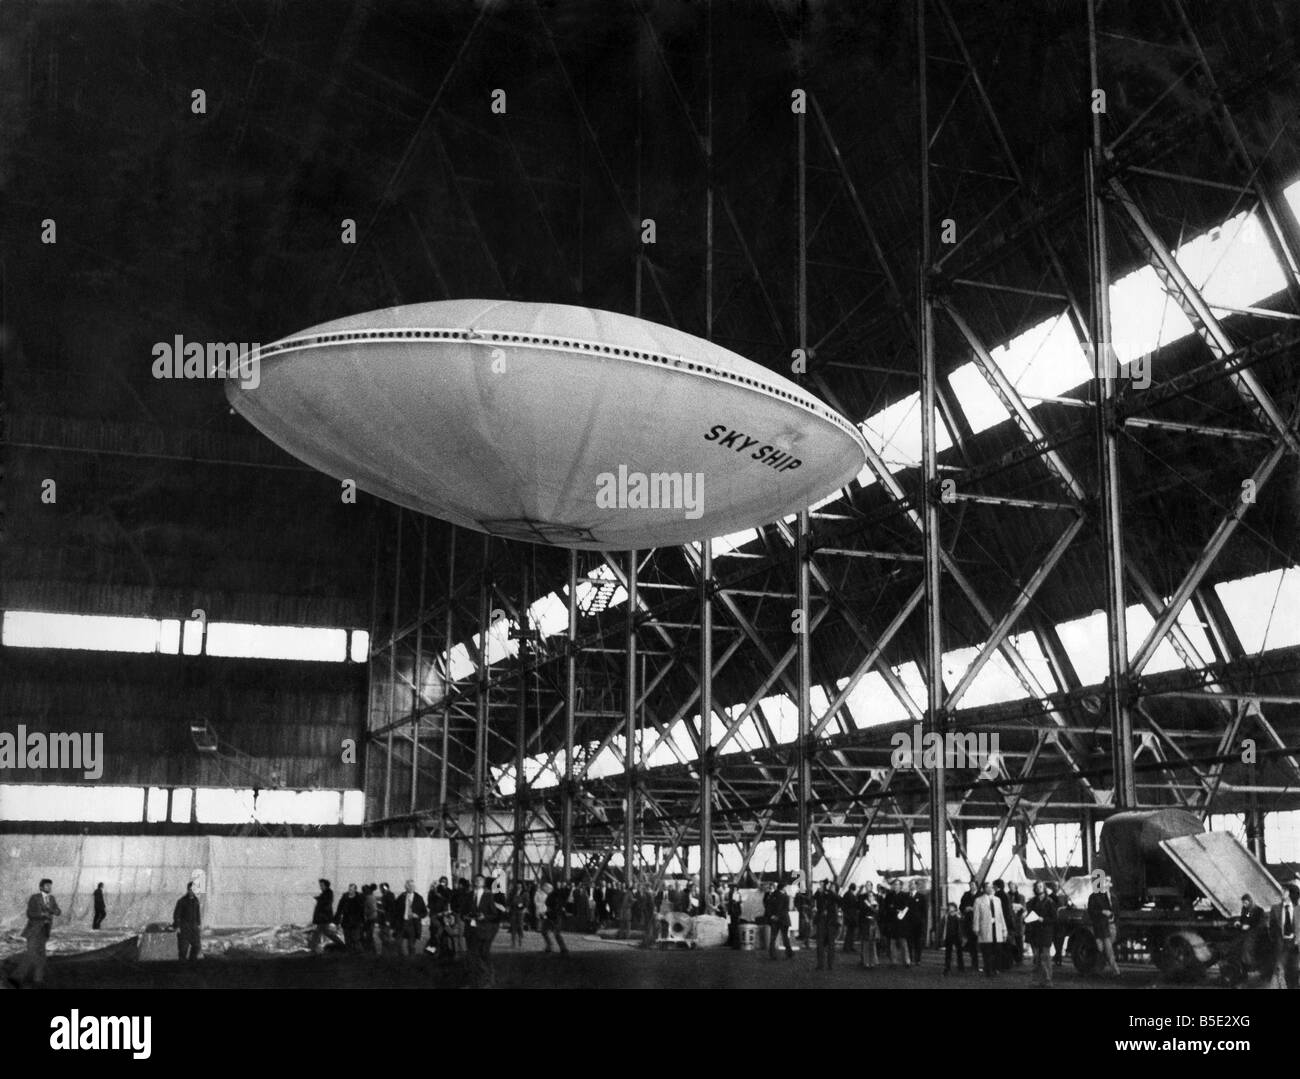 Molto silenzioso, il mondo il primo Flying Saucer - Skyship o come il suo designer preferisce chiamarla - alleggerite stesso nell'aria e la fantascienza è diventata la scienza di fatto. L'impostazione per la radio-controllato, volo senza equipaggio è stato il velivolo reale istituzione hangar a RAF Cardington, costruito per ospitare la sfortunata R101 dirigibile. ;Aprile 1975 Foto Stock